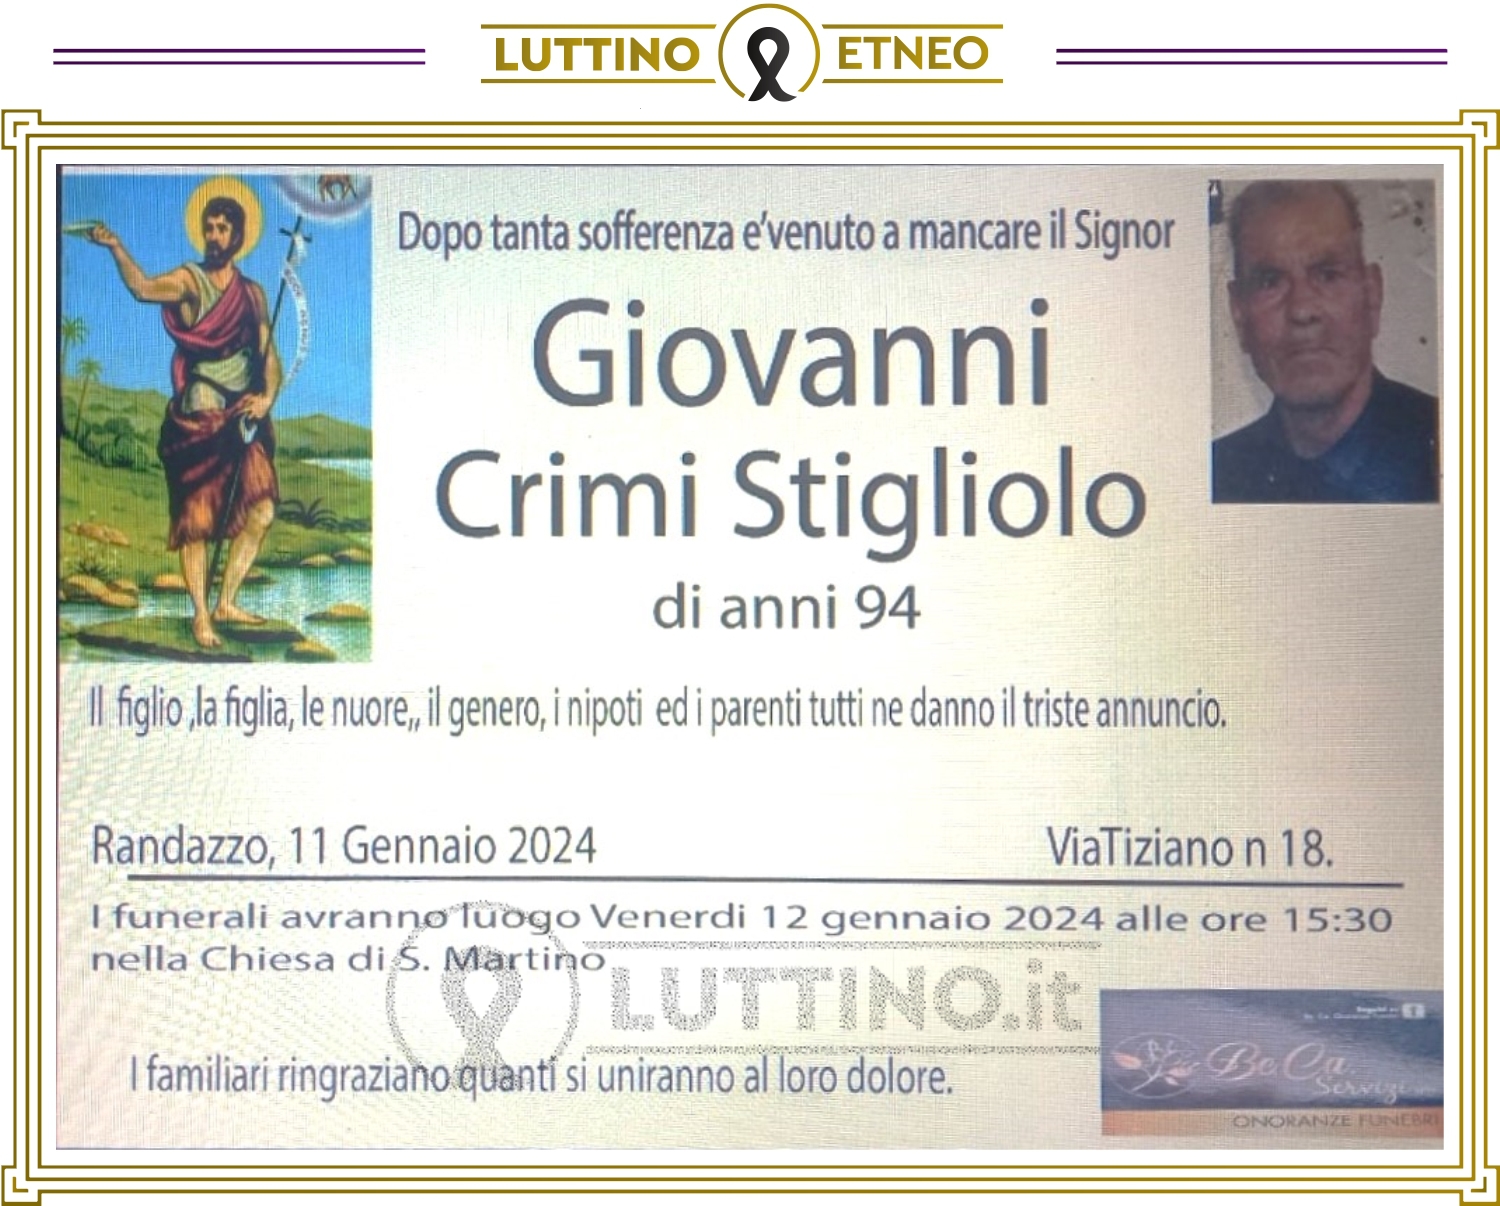 Giovanni Crimi Stigliolo